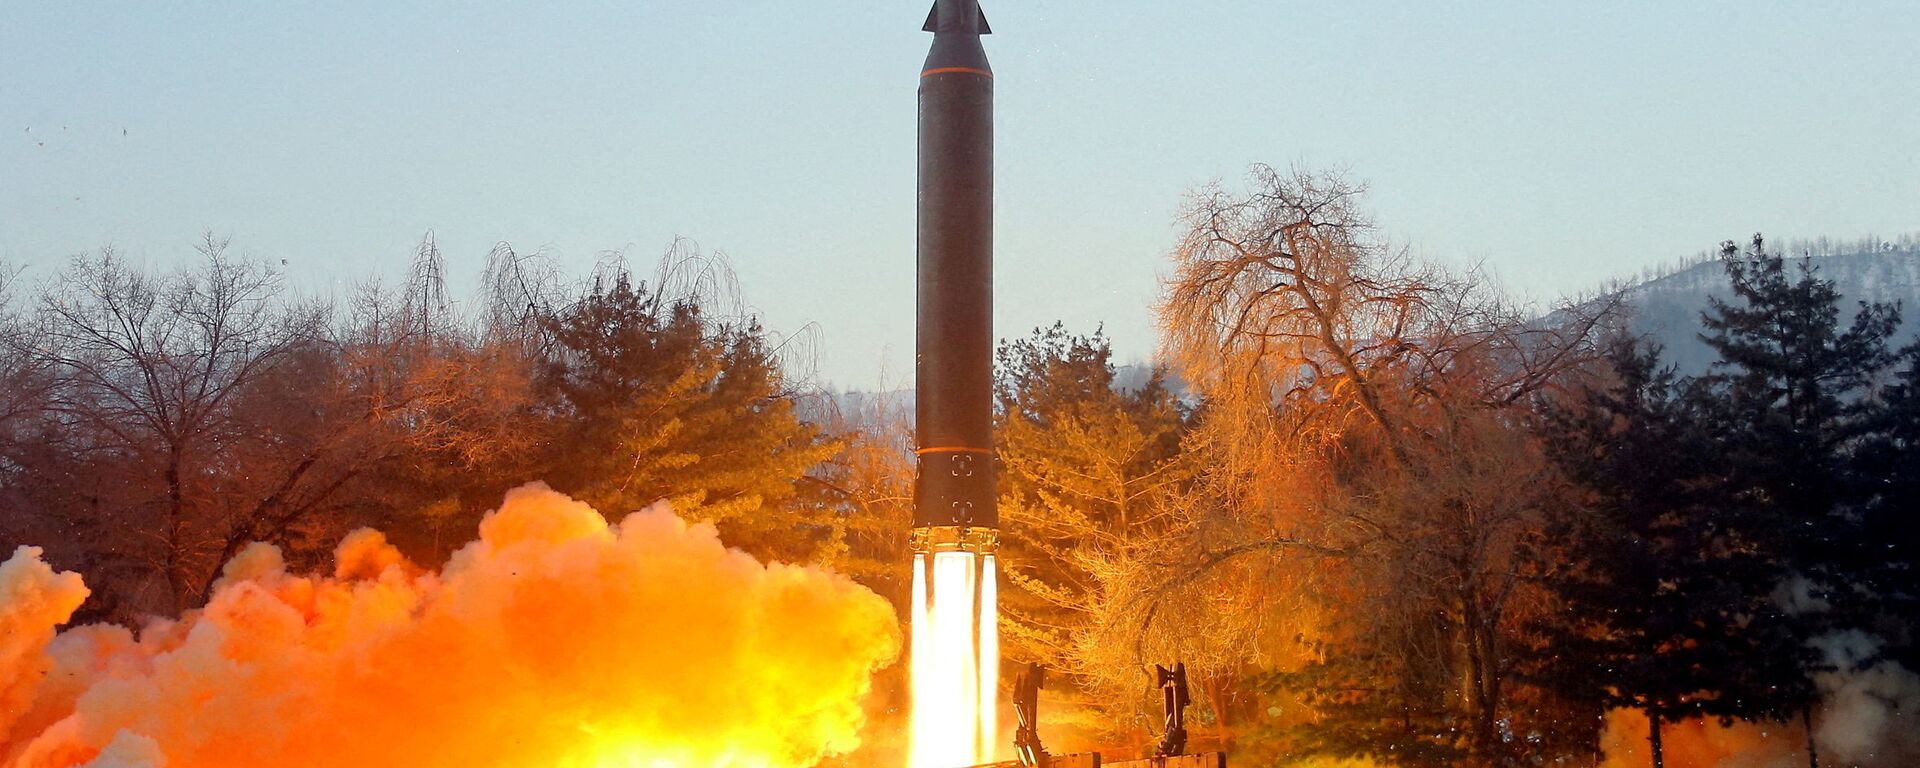 اختبار إطلاق صاروخ تفوق سرعته سرعة الصوت في كوريا الشمالية، 11 يناير 2022  - سبوتنيك عربي, 1920, 27.01.2022